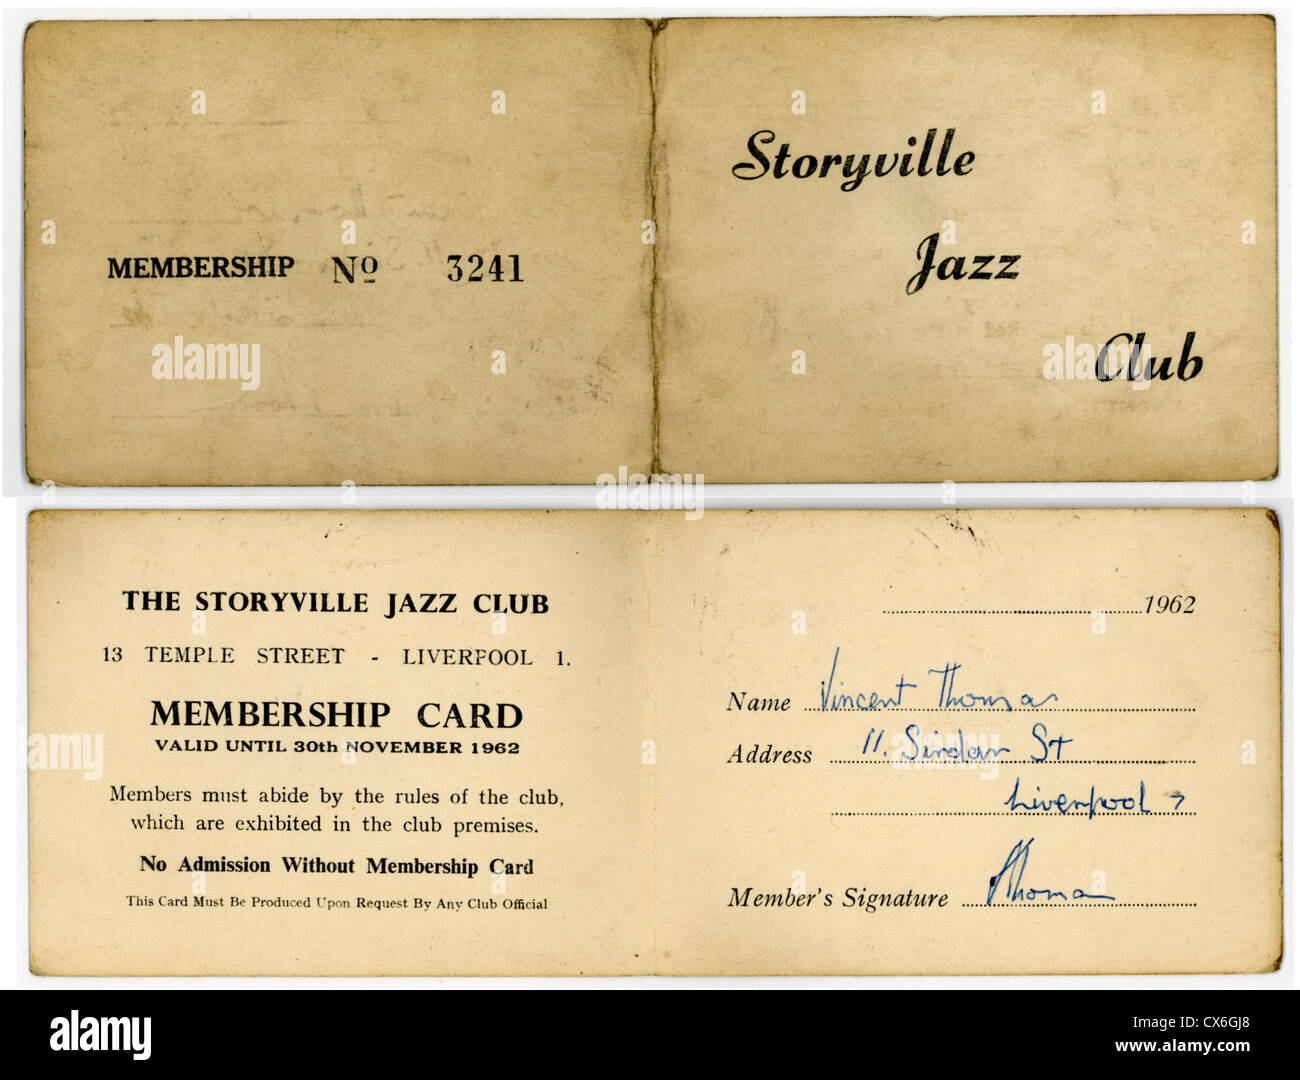 000520 - Storyville Jazz Club 1962 Membership Card Stock Photo